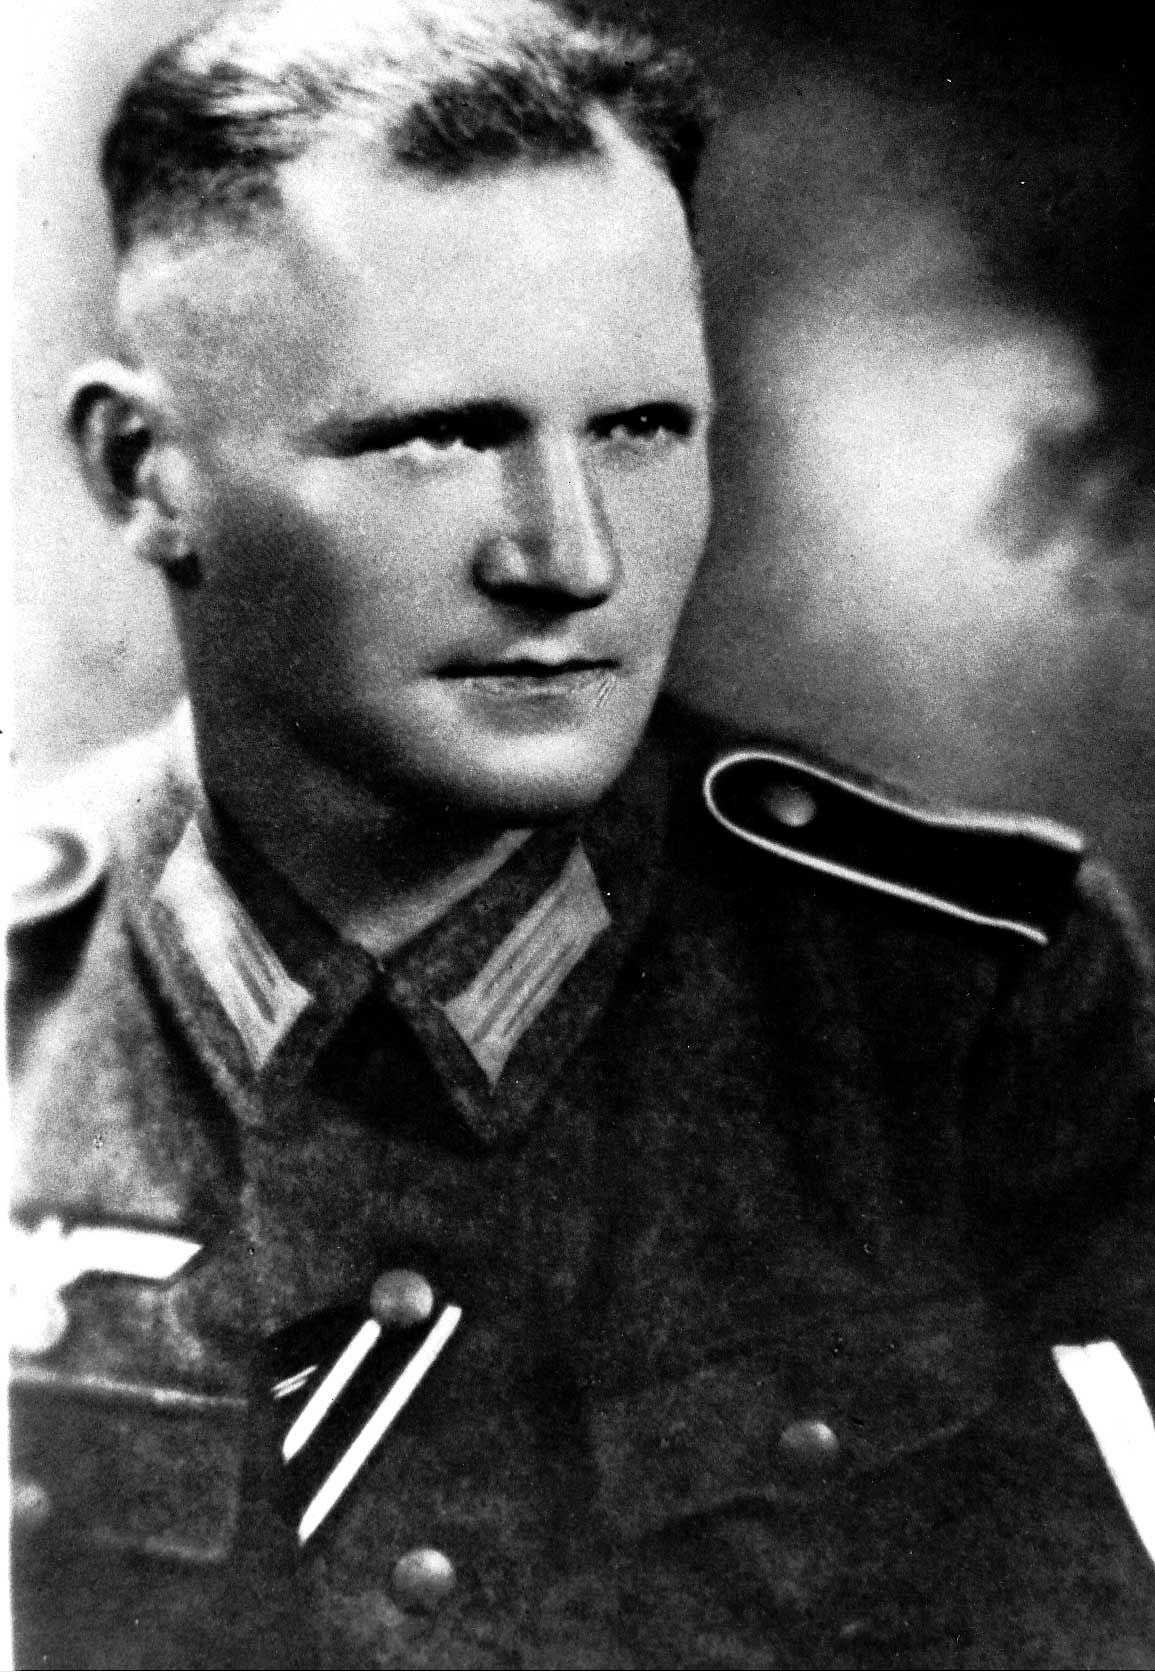 Schwarzweißes Porträt von Alfred Harry Keffel als Soldat von 1942, eingereicht von seinem Sohn Alfred Hans Keffel für seinen LeMO-Zeitzeugenbeitrag.